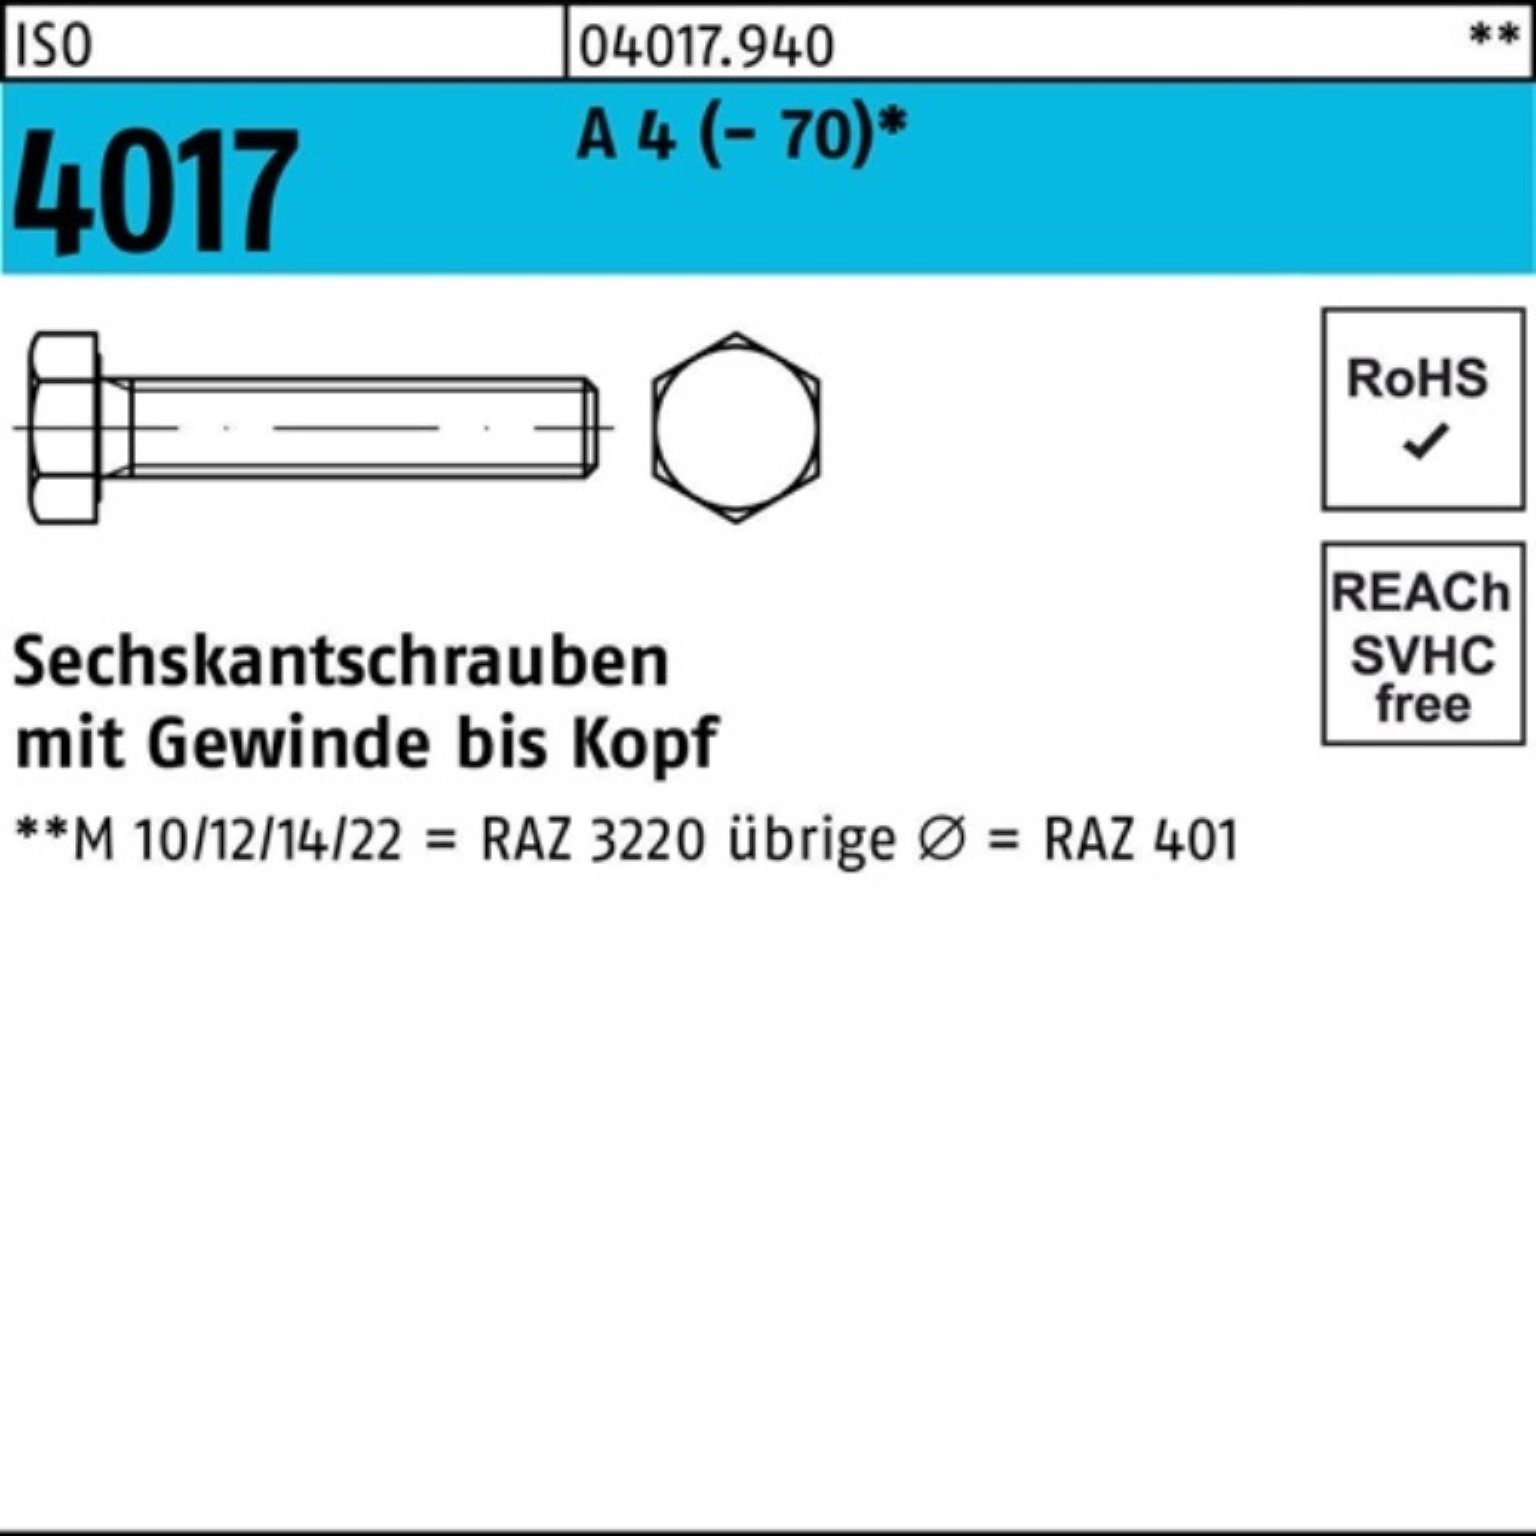 Bufab Sechskantschraube 100er Pack Sechskantschraube ISO 4017 VG M10x 50 A 4 (70) 100 Stück